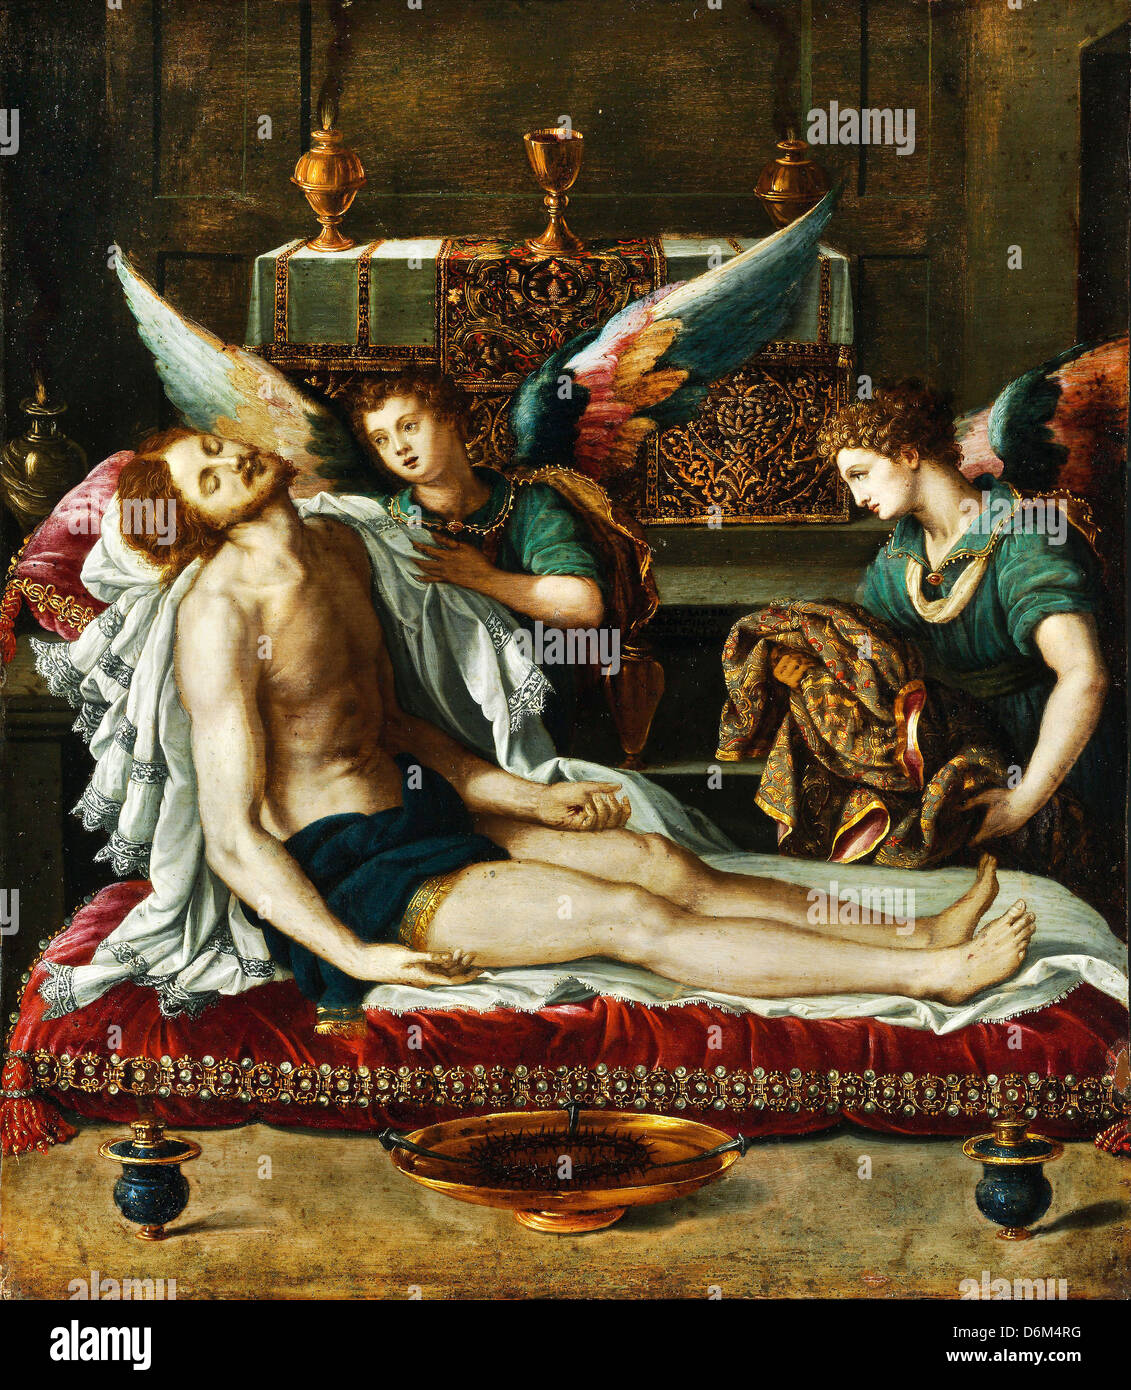 Alessandro Allori, le Corps du Christ oint par deux anges. Vers 1593 Huile sur toile. Musée des beaux-arts, Budapest Banque D'Images